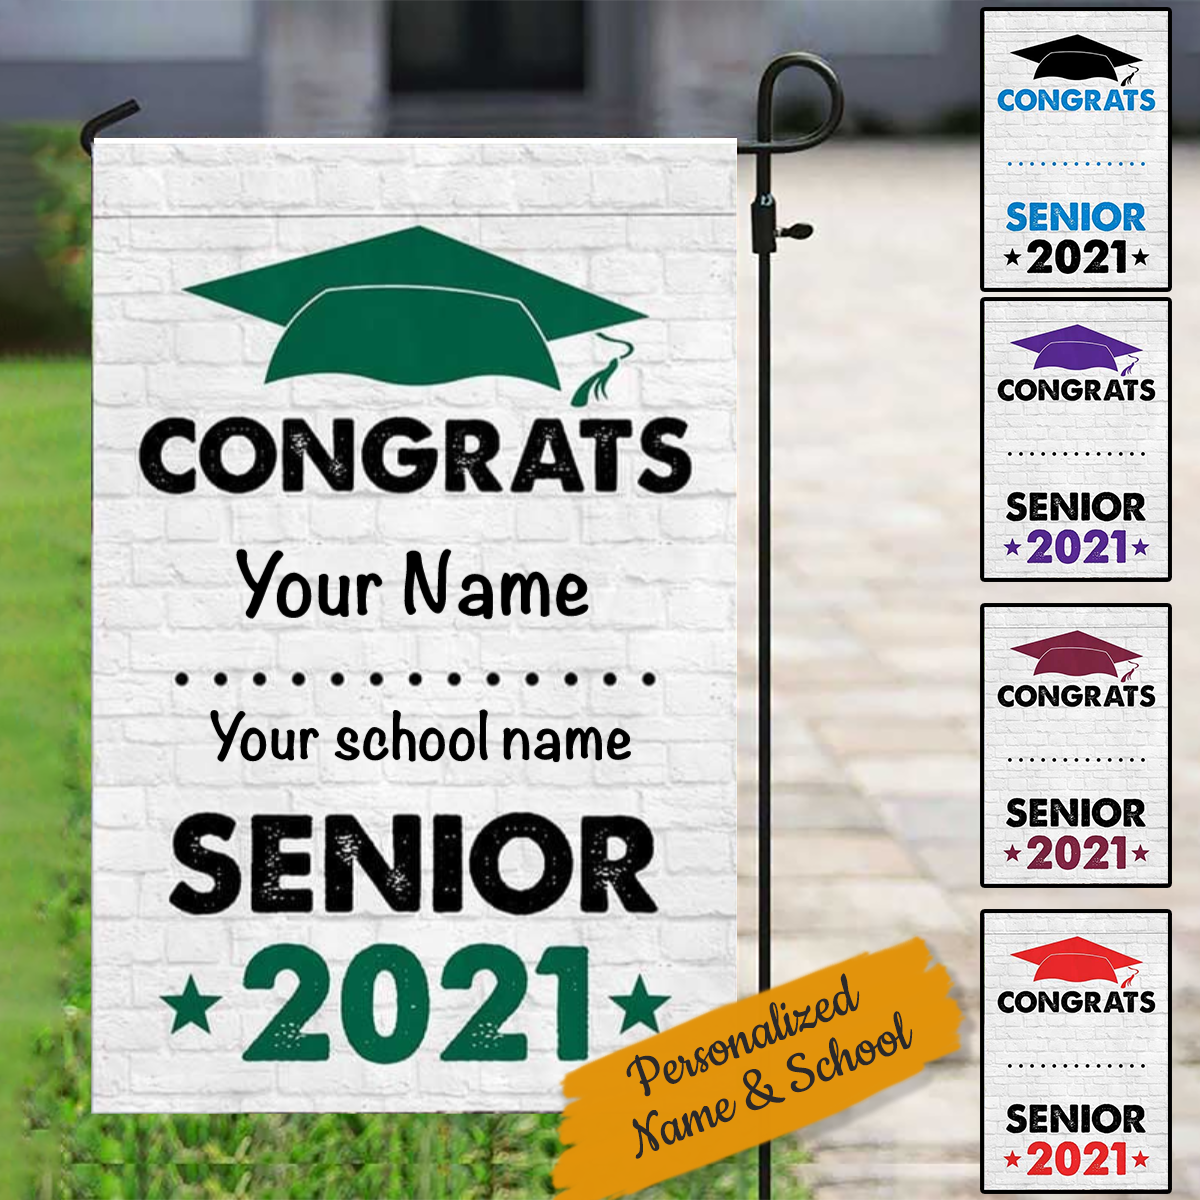 Congrats Senior 2021 Personalized Garden Flag